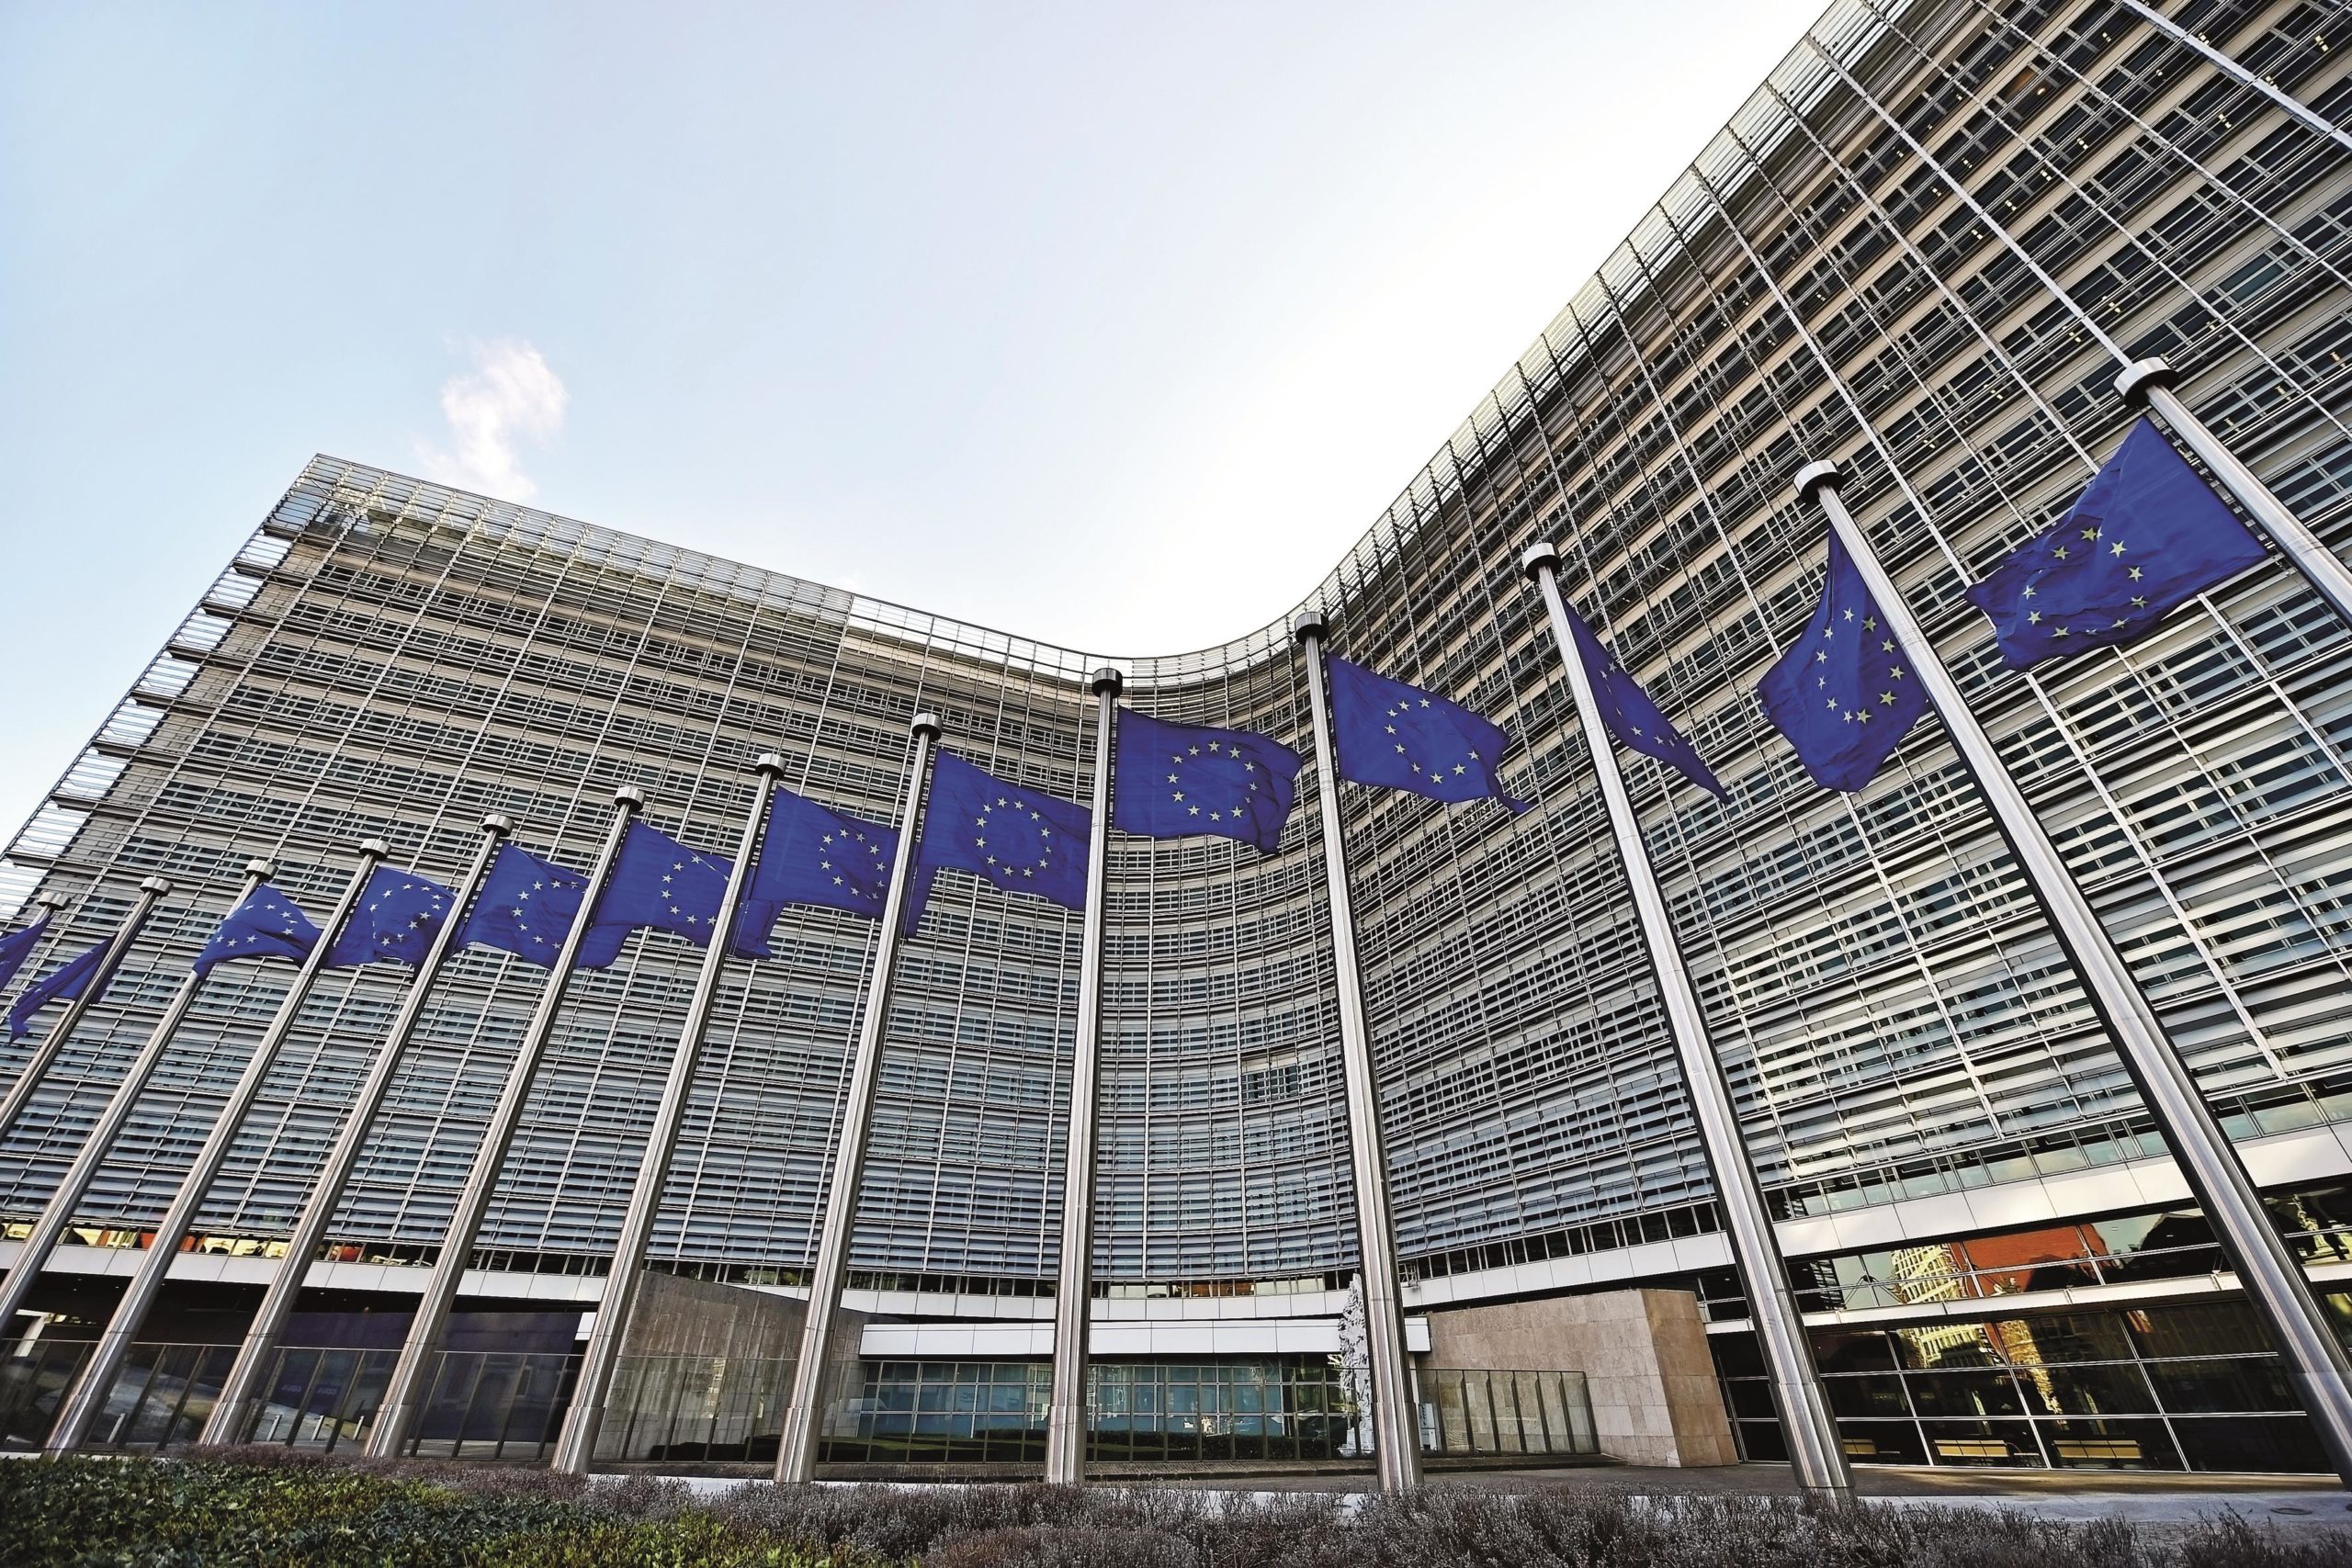 Совет европы оон. Европейская комиссия Брюссель. Здание Евросоюза в Брюсселе. Штаб квартира ООН В Брюсселе. Здание Евросовета Брюссель.